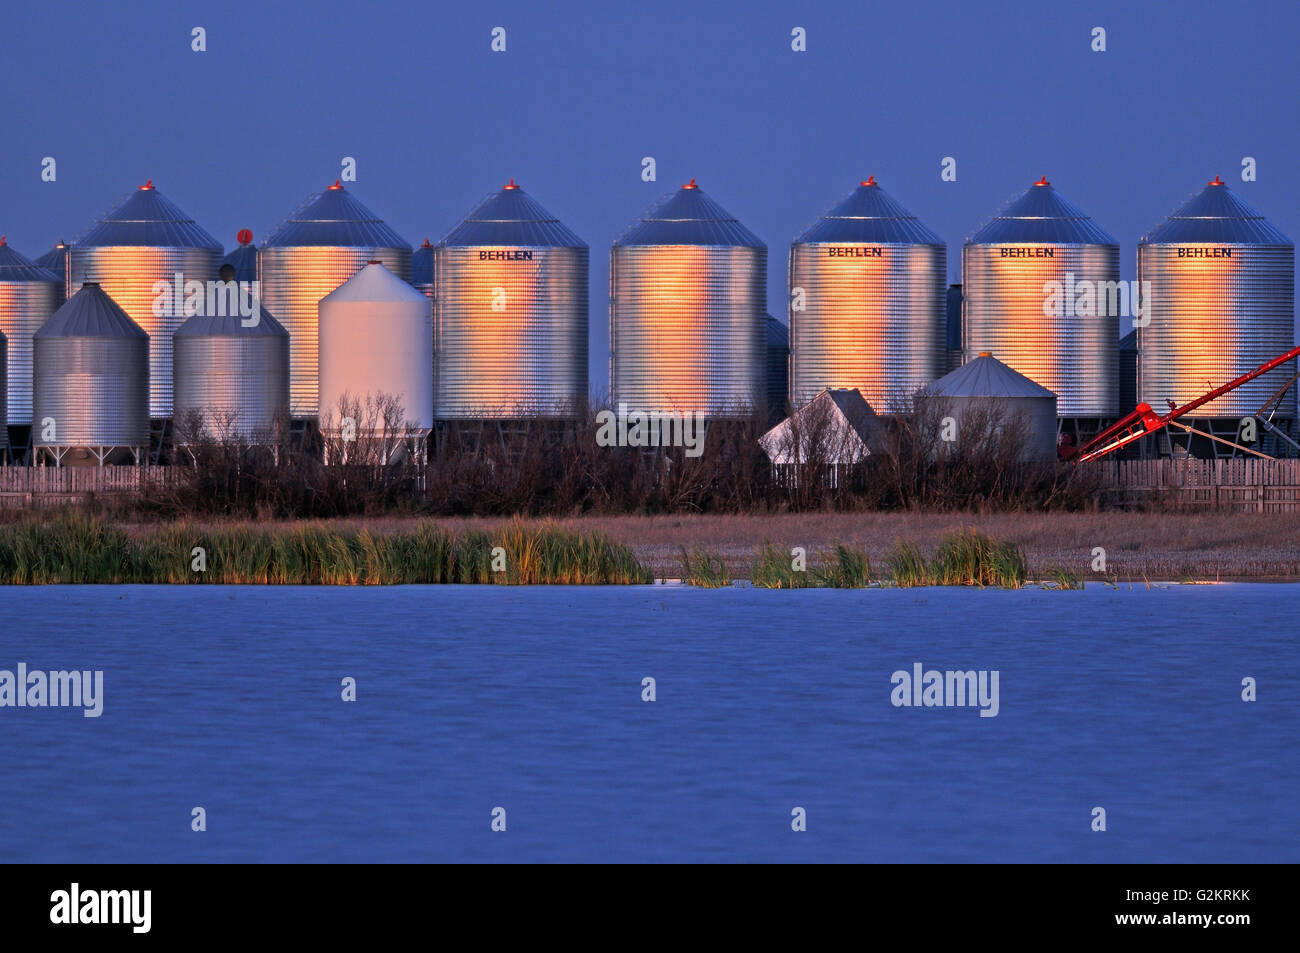 Grain bins at dusk Tuxford Saskatchewan Canada Stock Photo